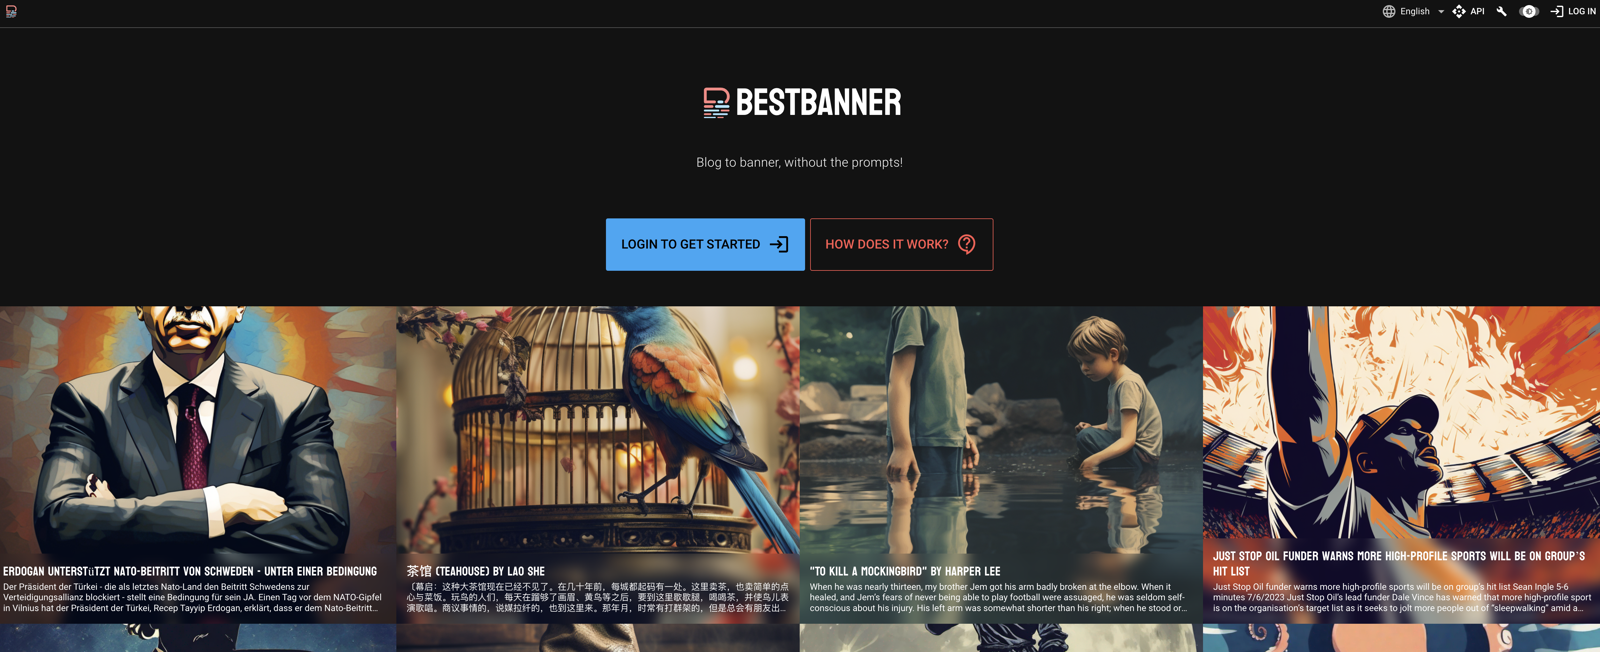 BestBanner website